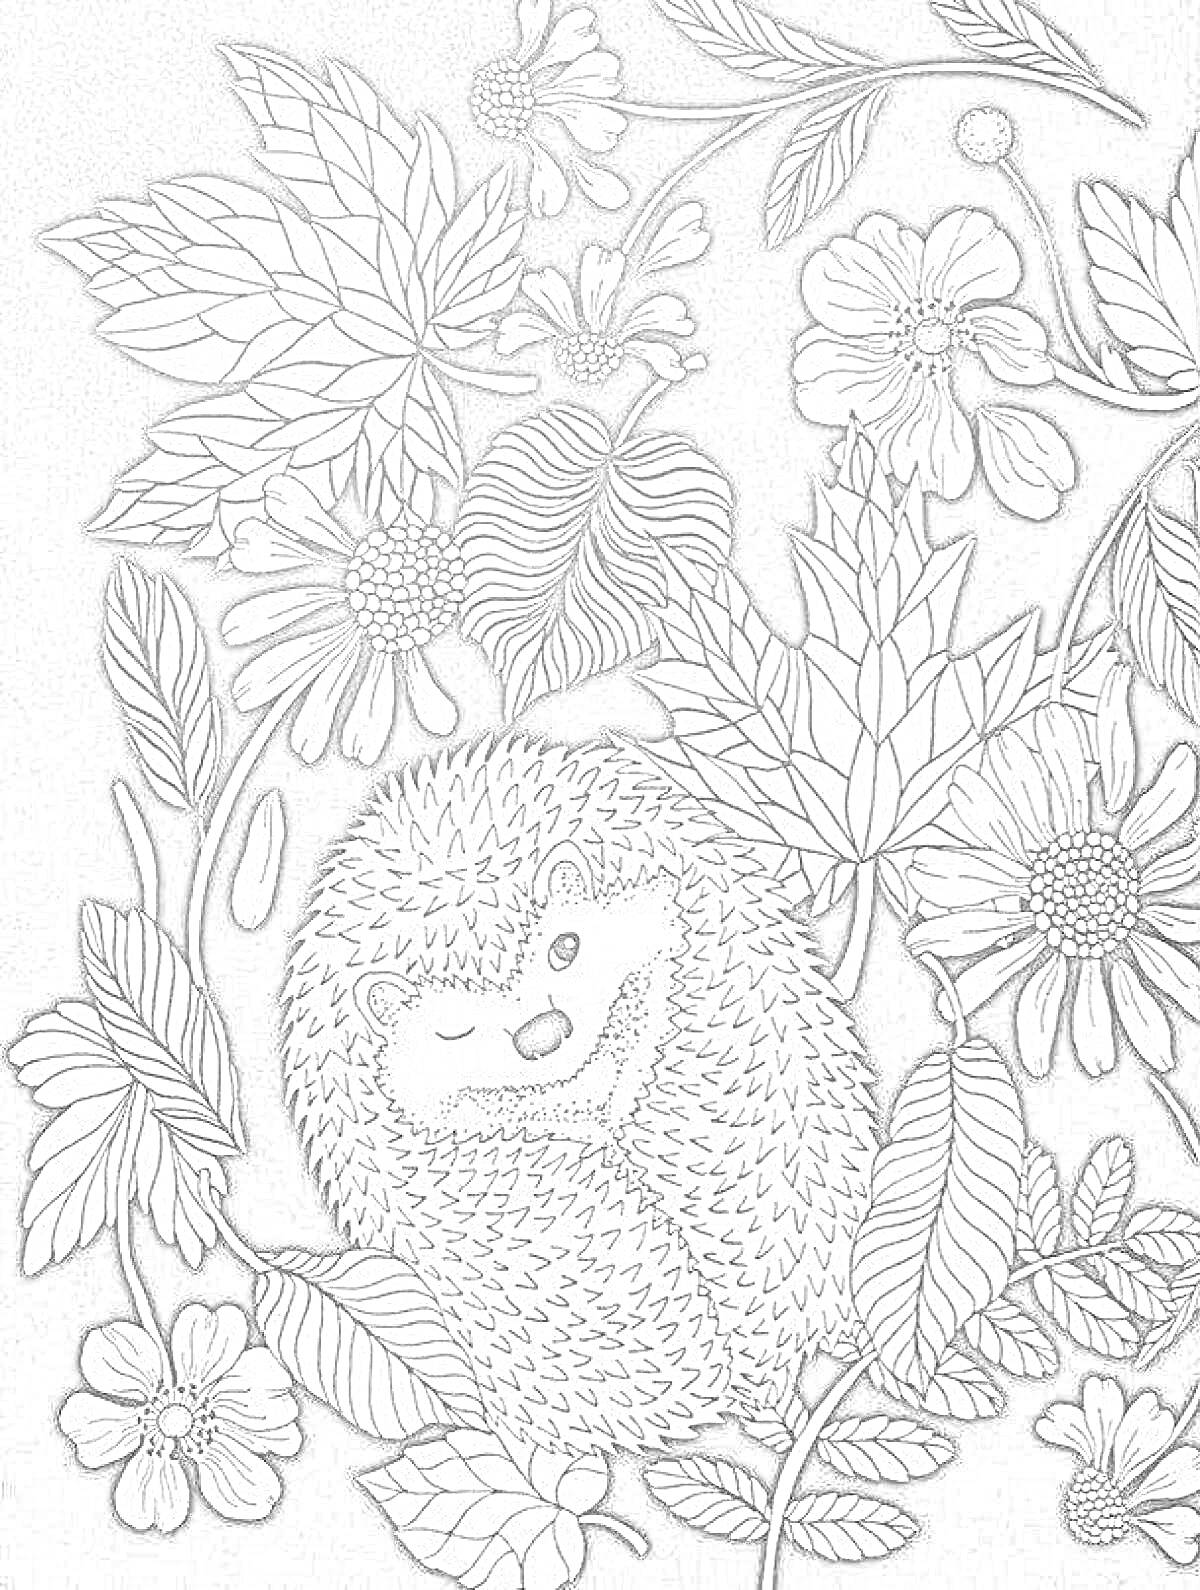 Раскраска Ёж с цветами и листьями - ёжик, окруженный большими листьями и разными цветами